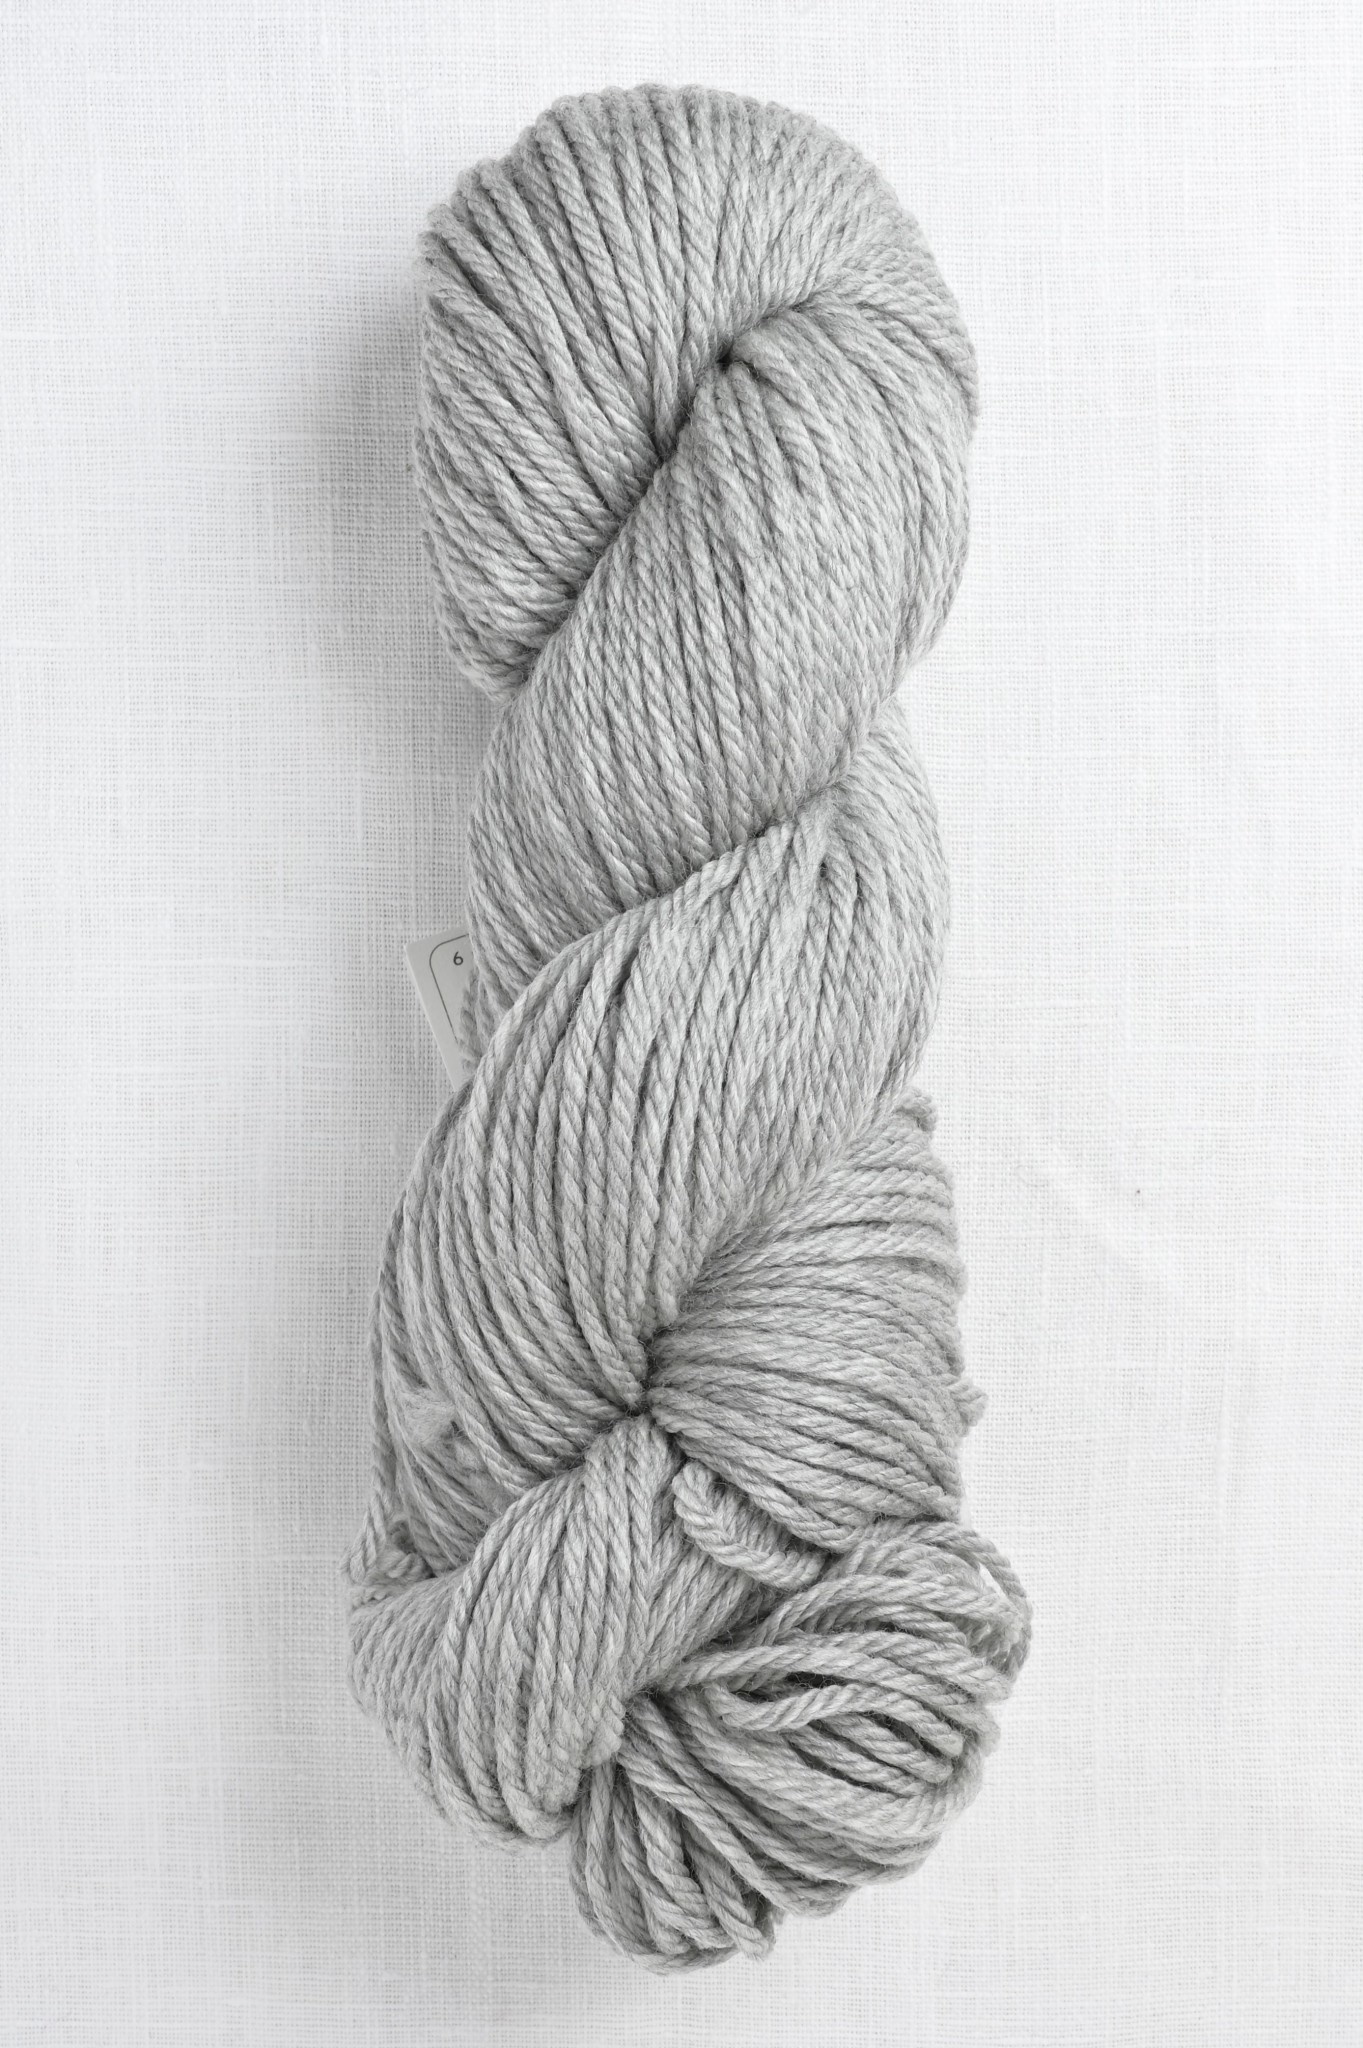 Cascade 220 Superwash Aran Yarn - 1946 Silvery Grey at Jimmy Beans Wool